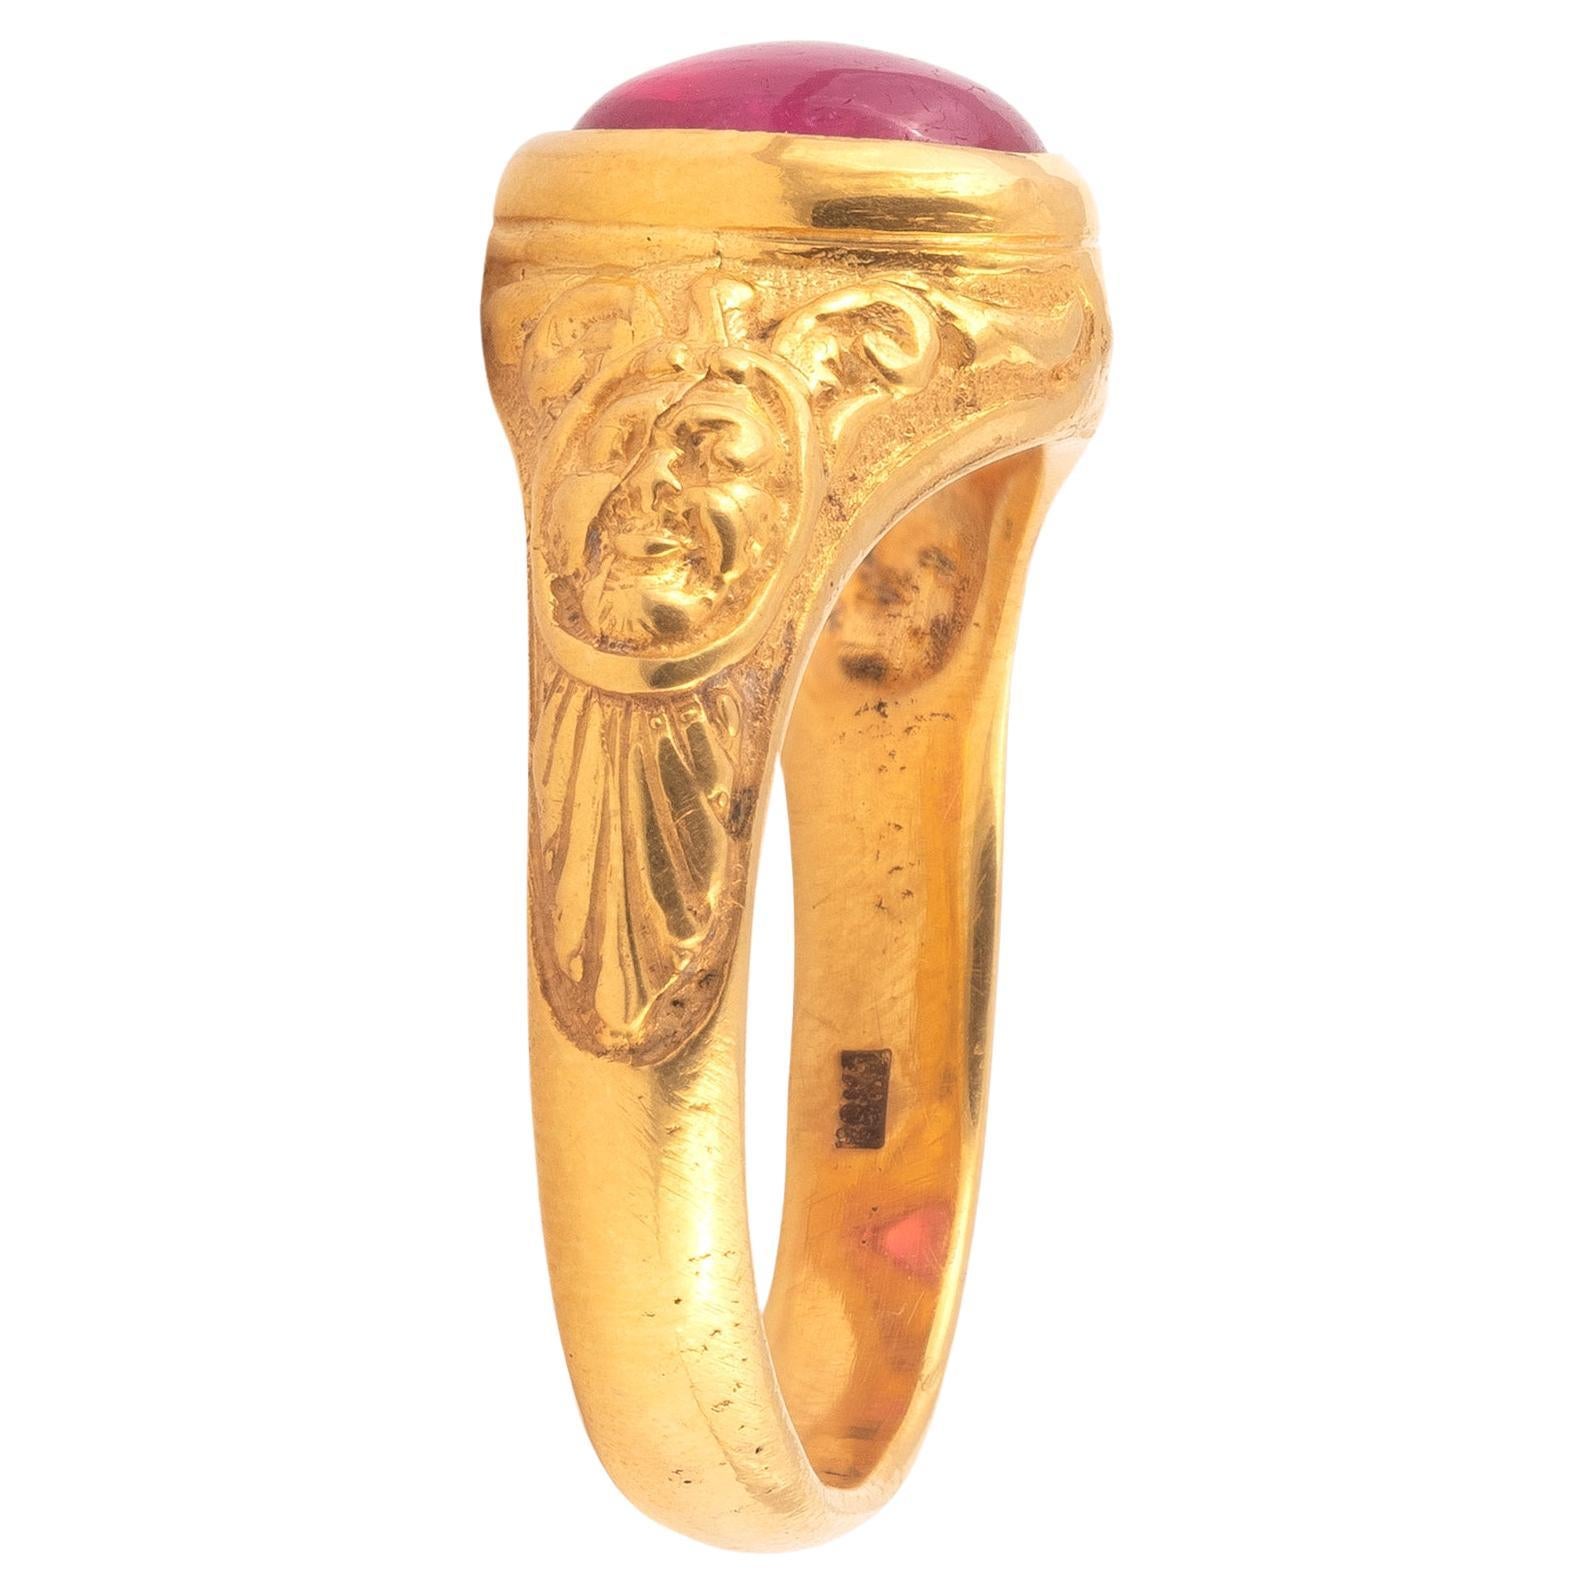 Goldring mit geprägten Masken und Cabochon-Rubin. Dieser skulpturale Ring ist in Gold gegossen und fein ziseliert.
Größe 8
Gewicht: 9,6gr.